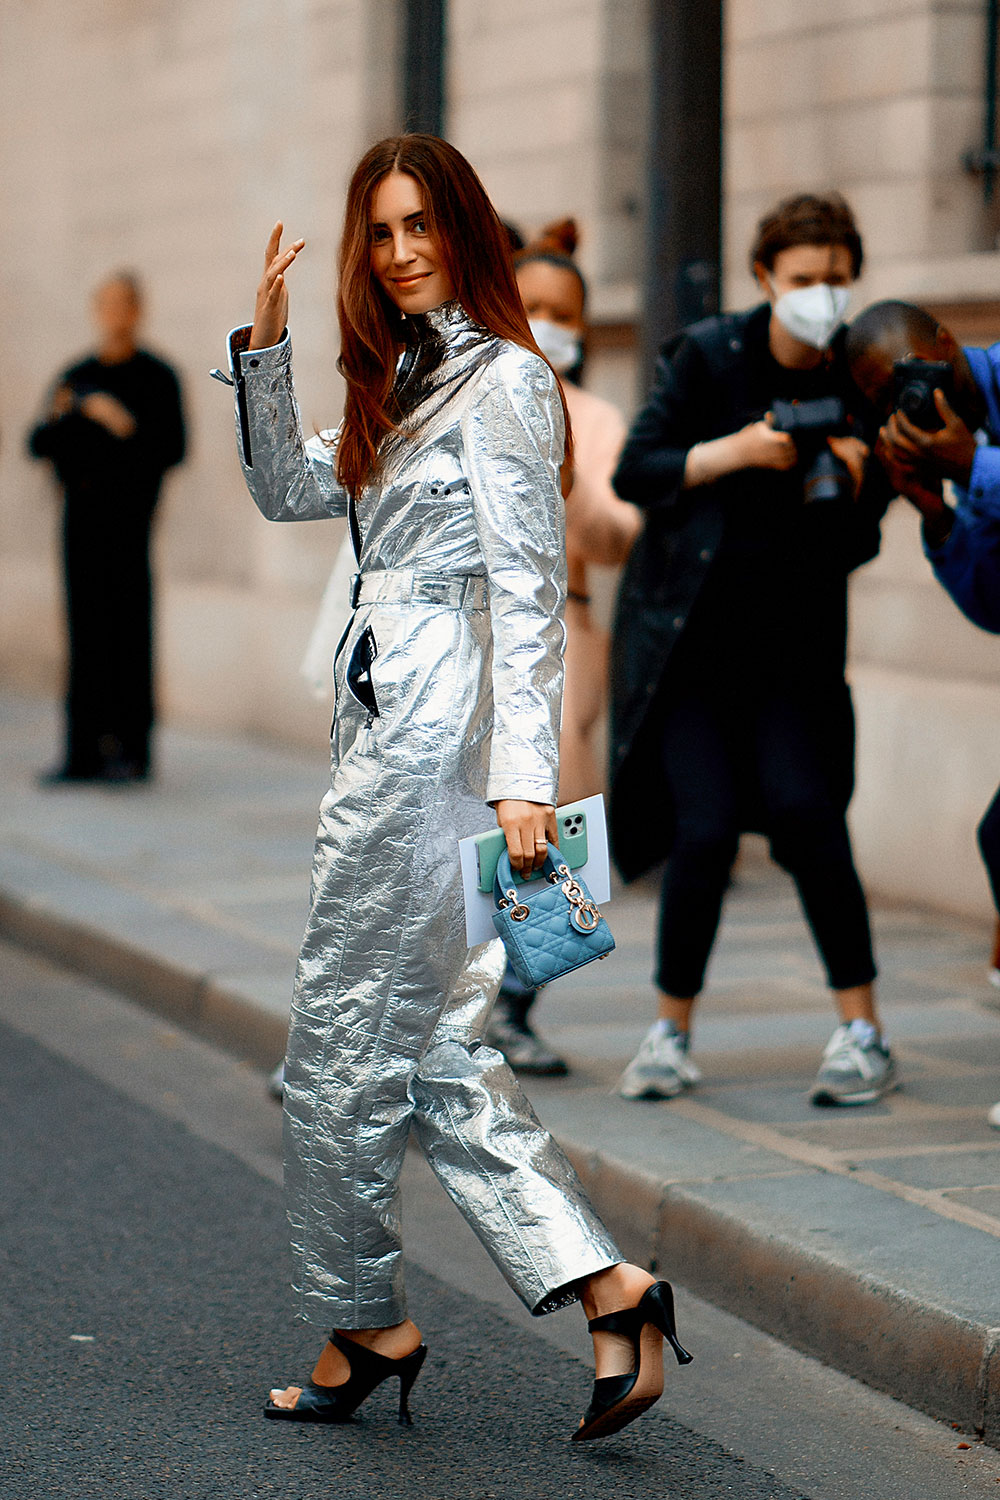 Fashionista gốc Tây Ban Nha - Gala Gonzalez xuất hiện nổi bật với bộ jumpsuit chất liệu ánh bạc như phi hành gia, trên tay là chiếc túi Lady Dior Mini phiên bản xanh da trời siêu hiếm.